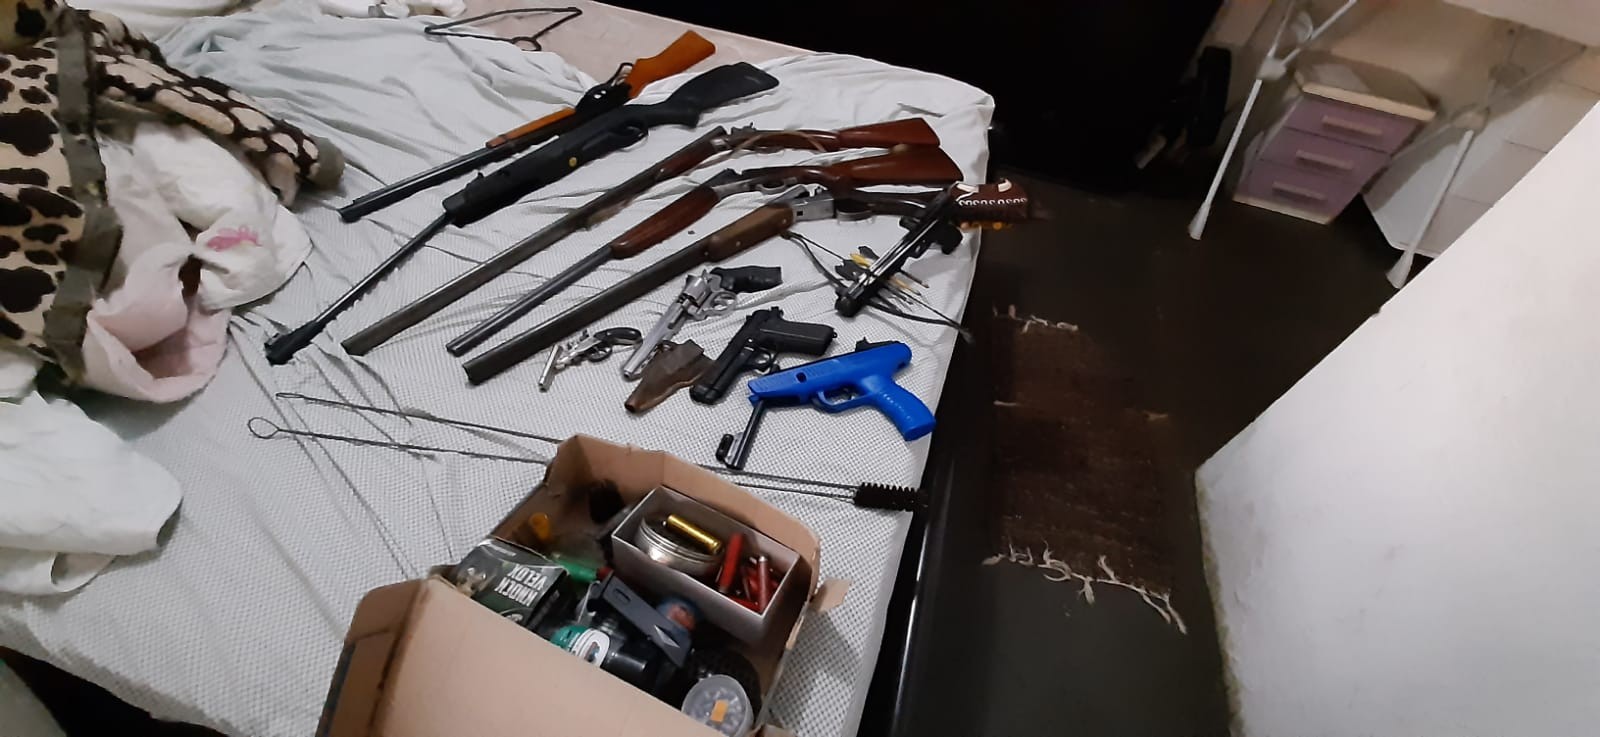 Polícia apreende arsenal com armas e facas na zona rural de Garça